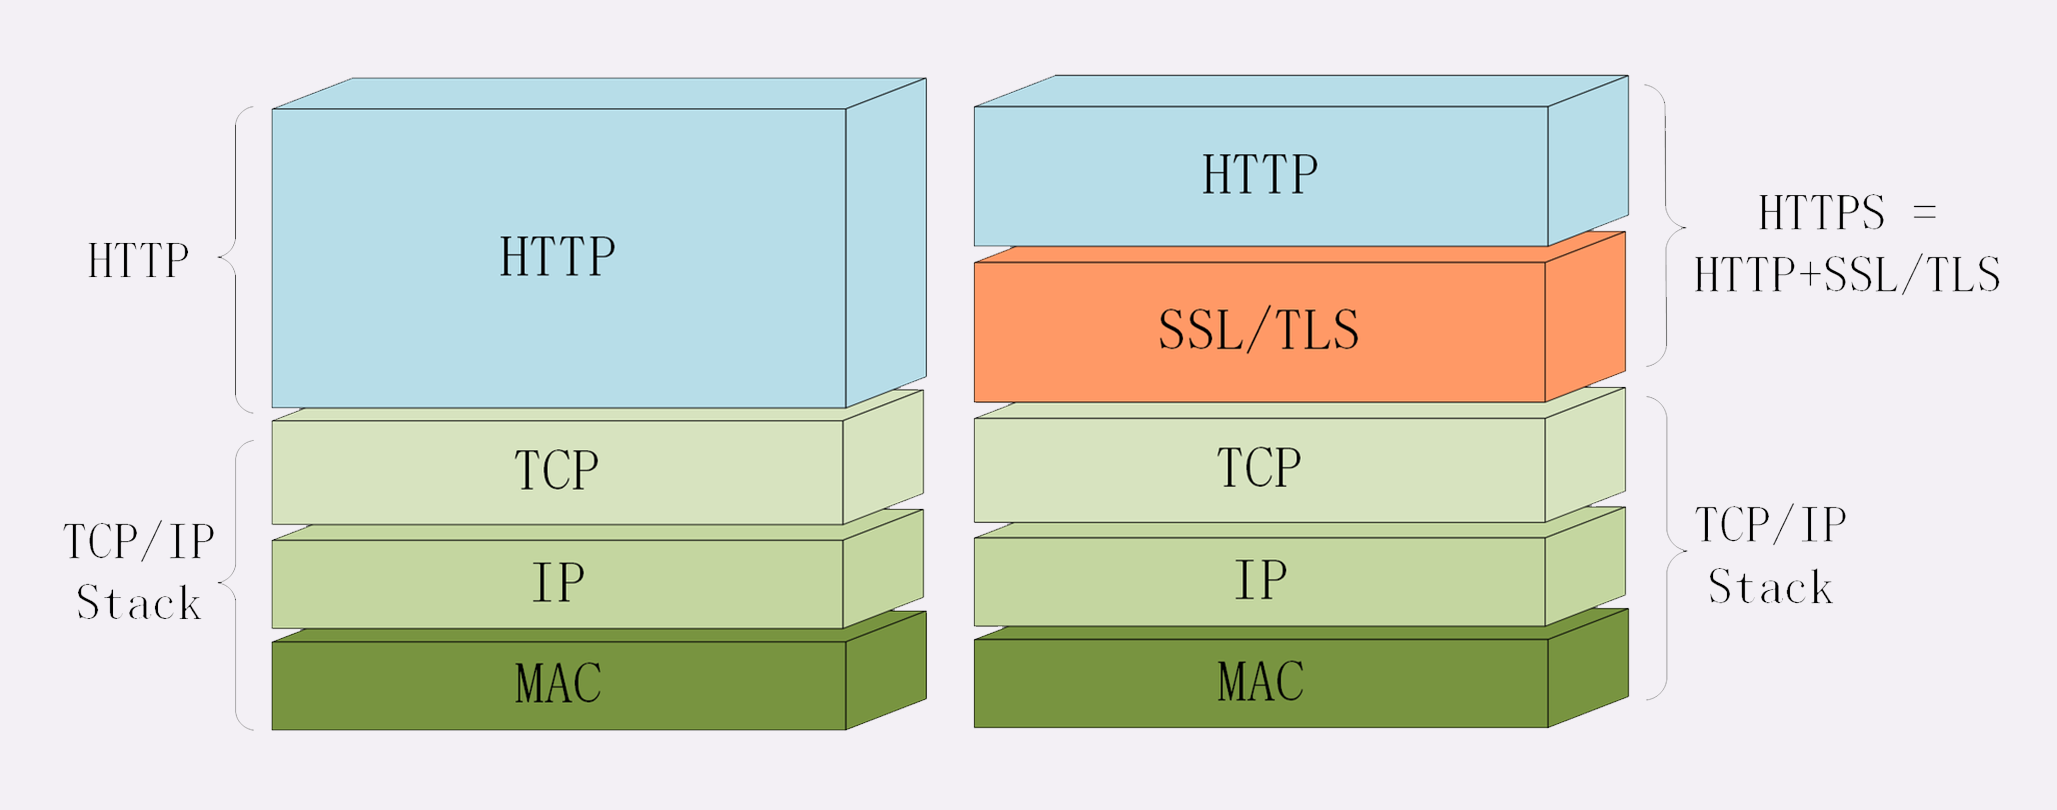 HTTP对比HTTPS